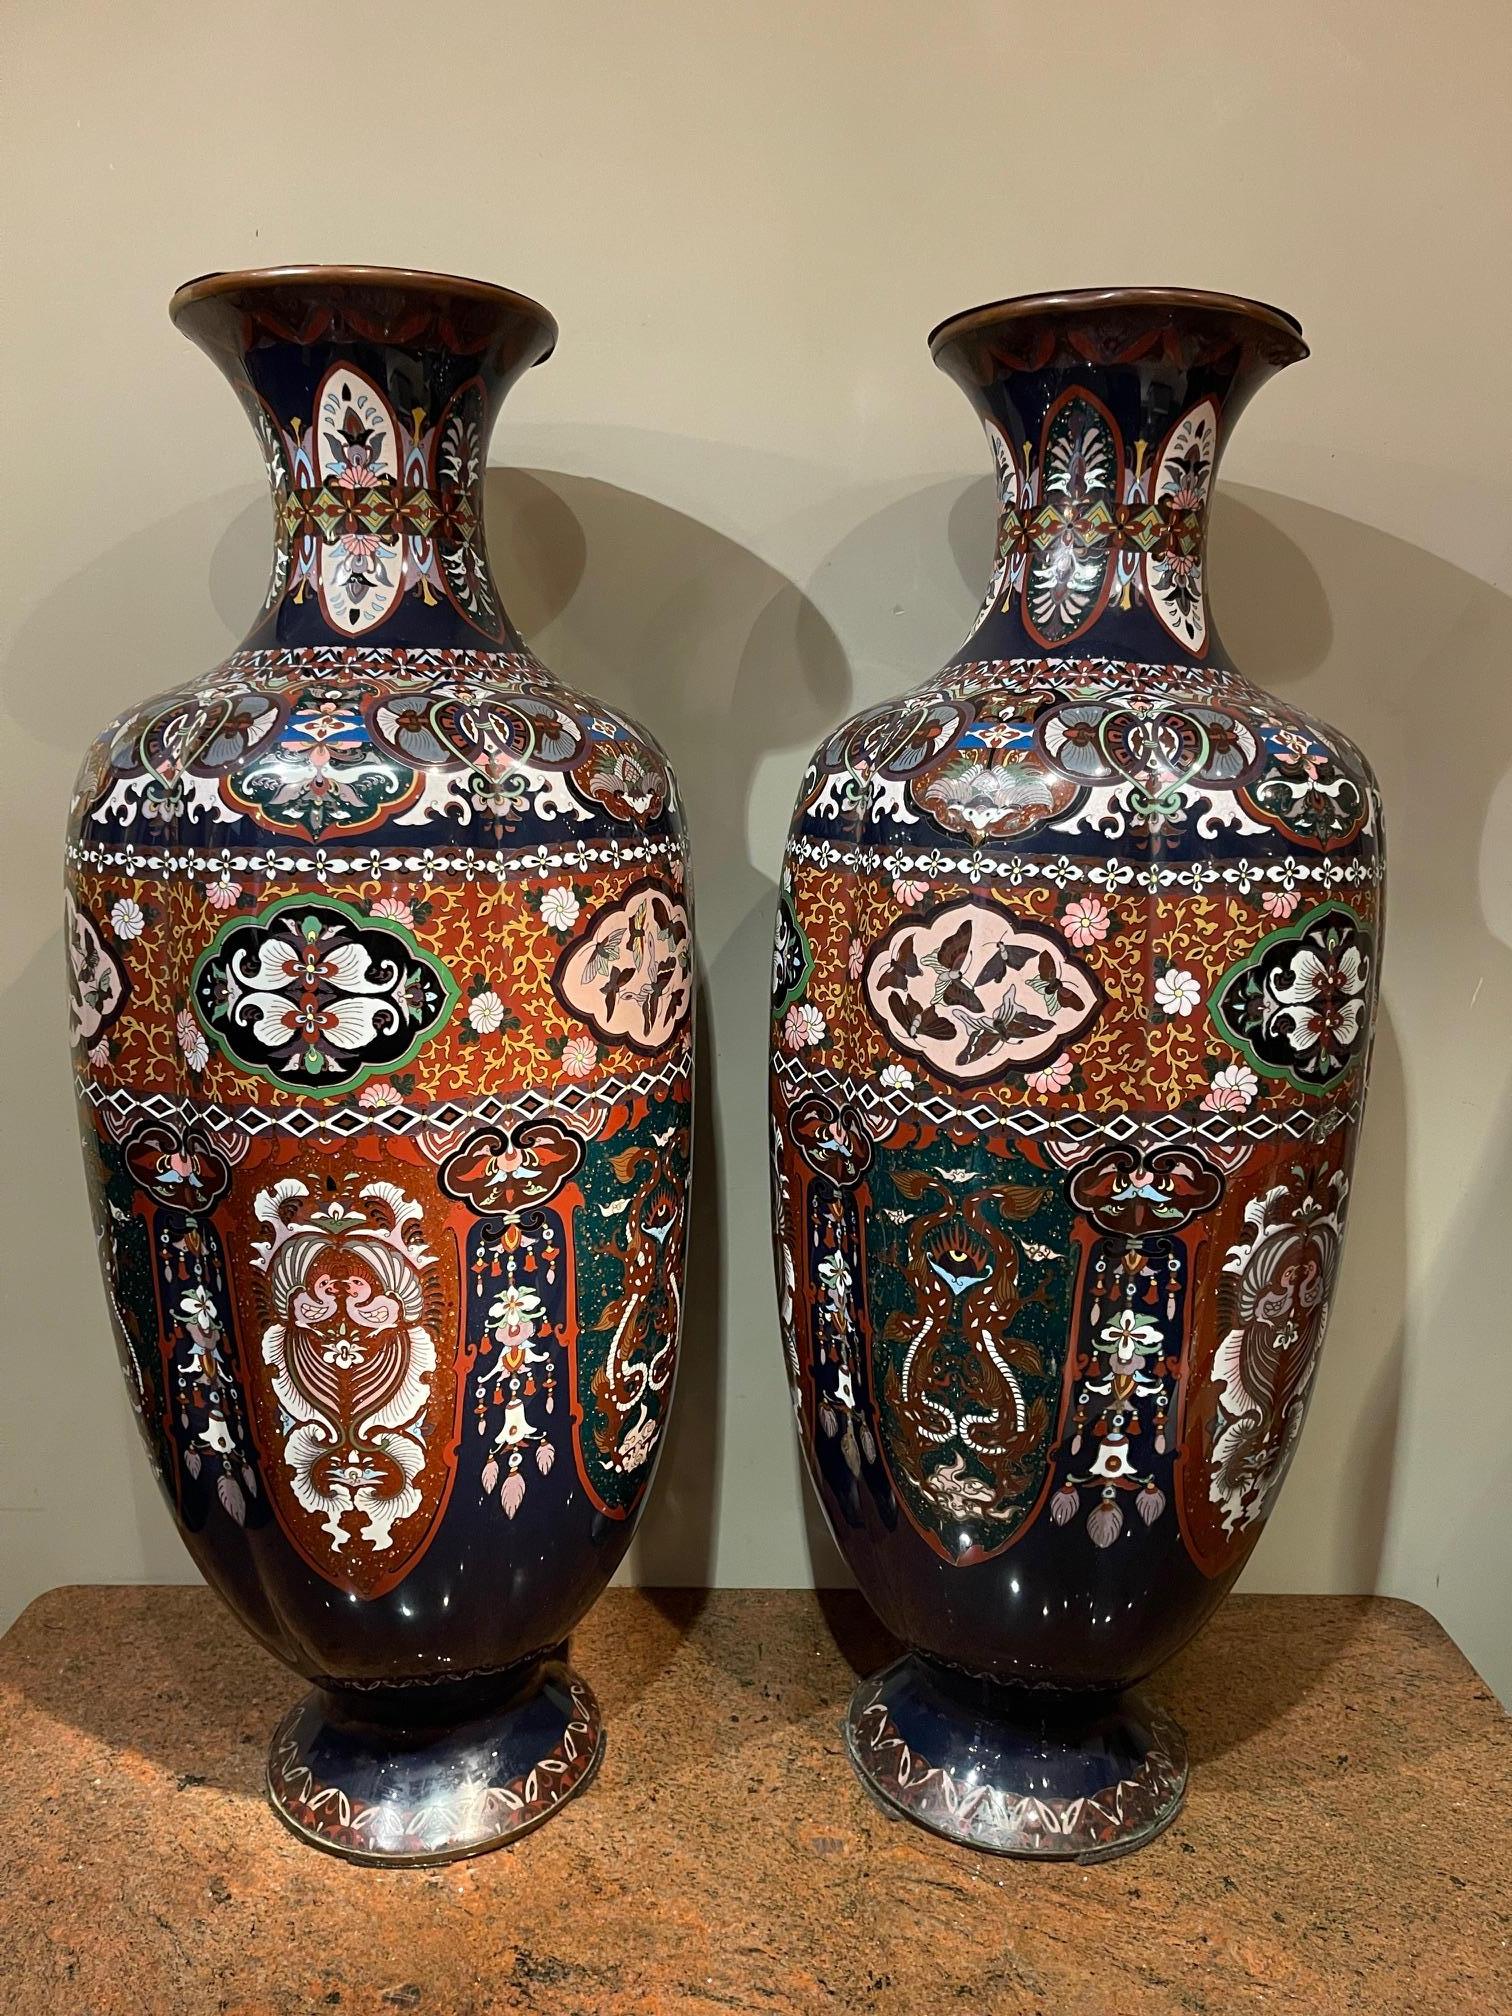 Rare et très grande paire ( 0,92m de haut) de vases cloisonnés, Japon, C.I.C.
La technique du 